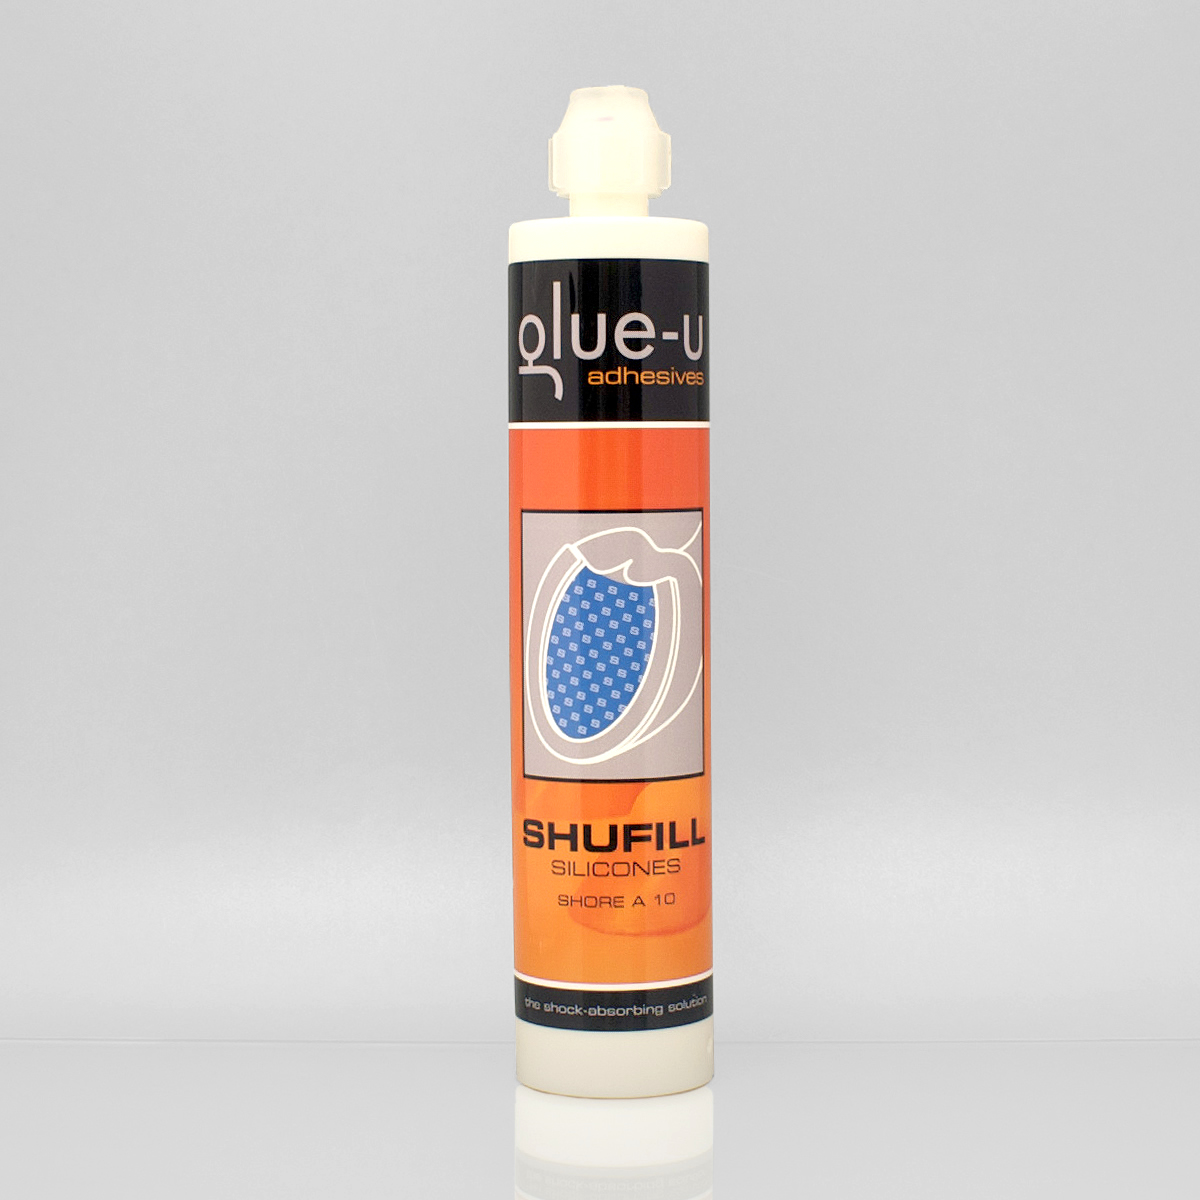 Glue-U Shufill silikones hellblau A10 soft